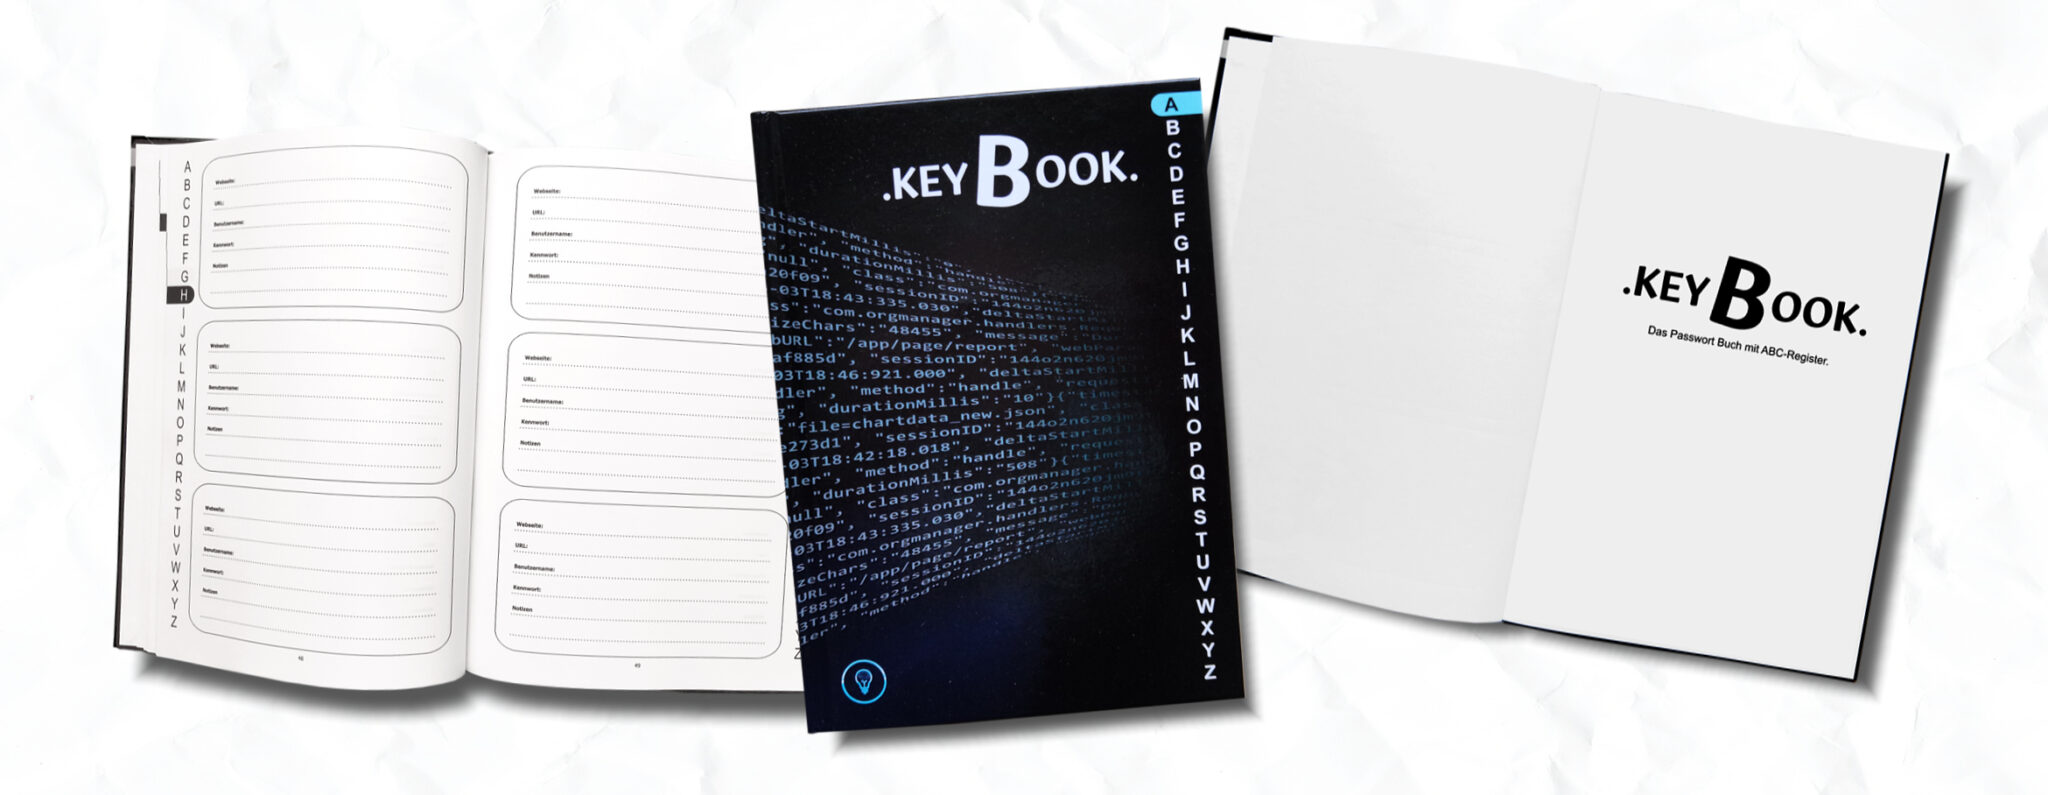 KeyBook - Passwortbuch mit ABC-Register, Passwörter und Kennwörter verwalten und organisieren, Unhackbarer Aufbewahrungsort für Ihre Passwörter